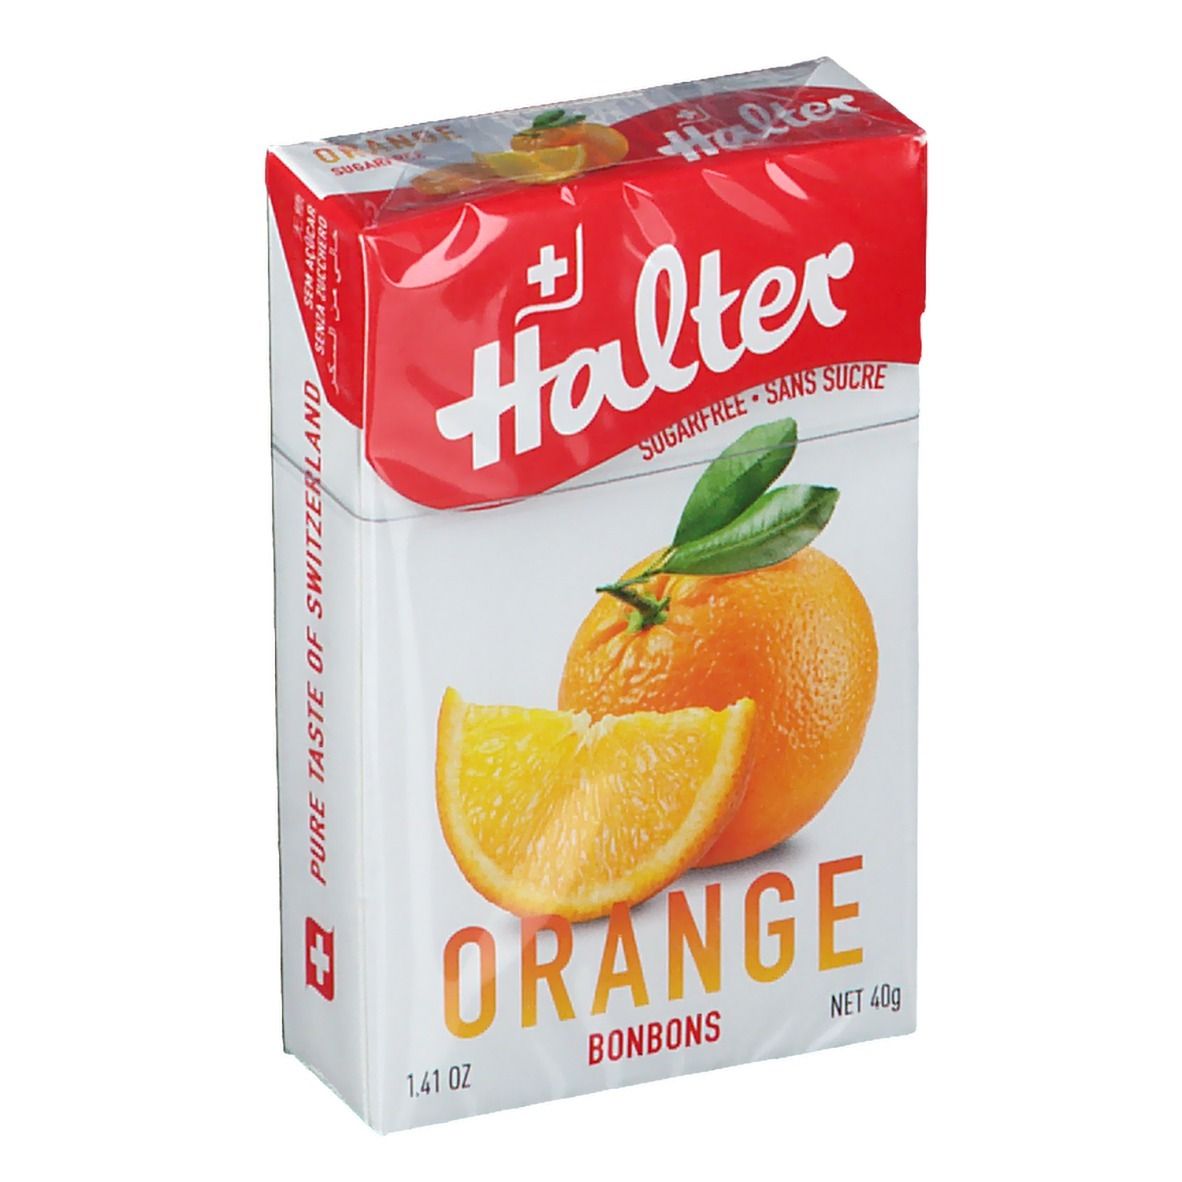 Image of Halter Orange Bonbons Zuckerfrei